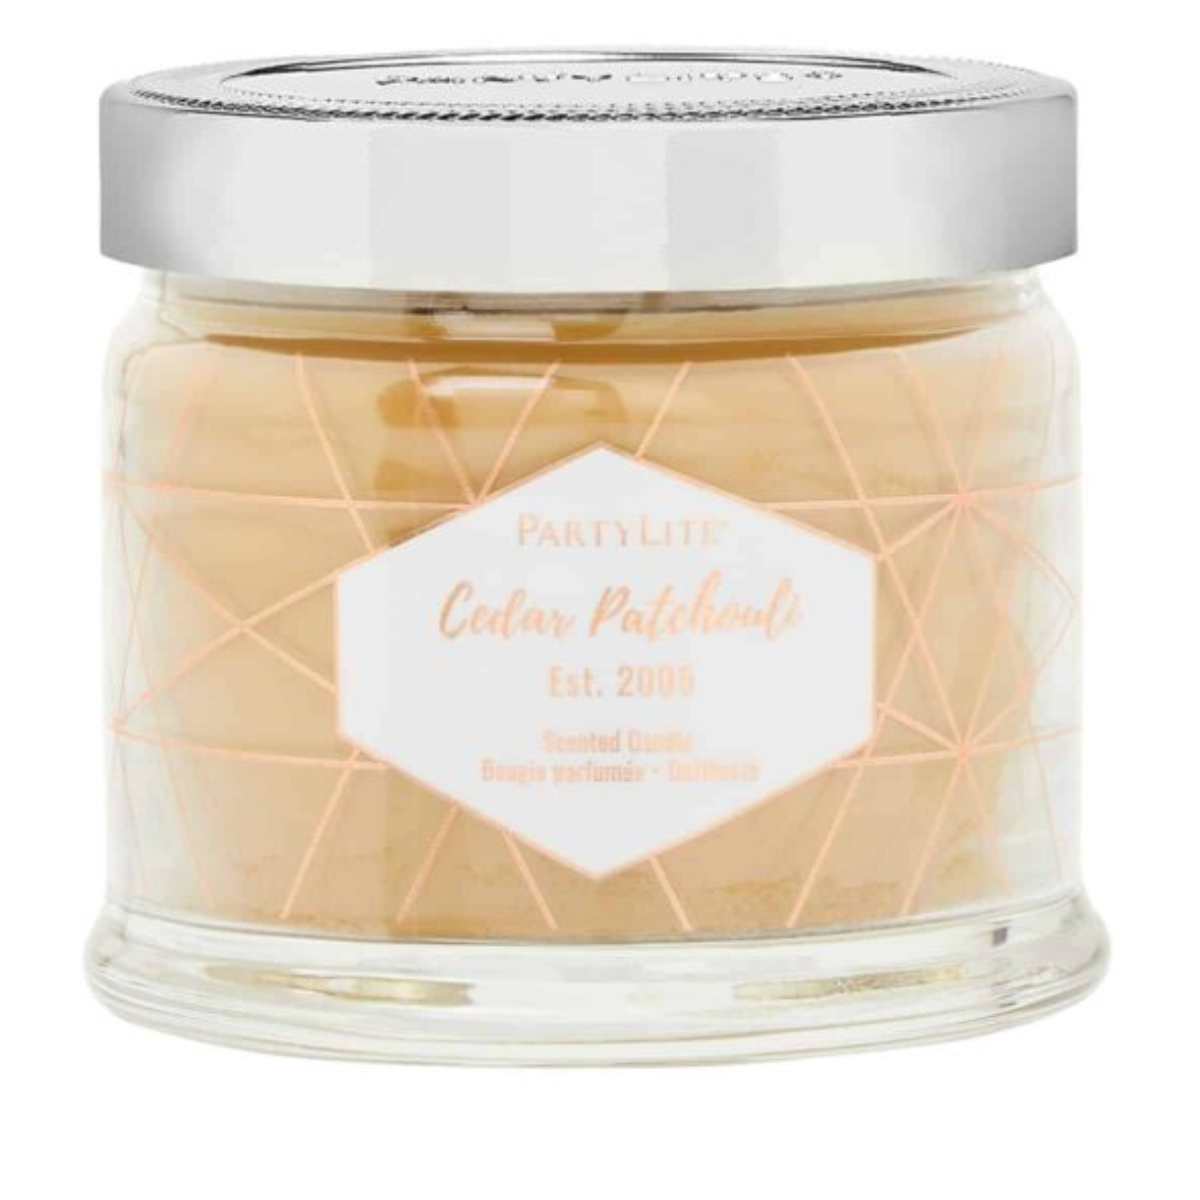 Cedar Patchouli 3-Wick Jar Candle